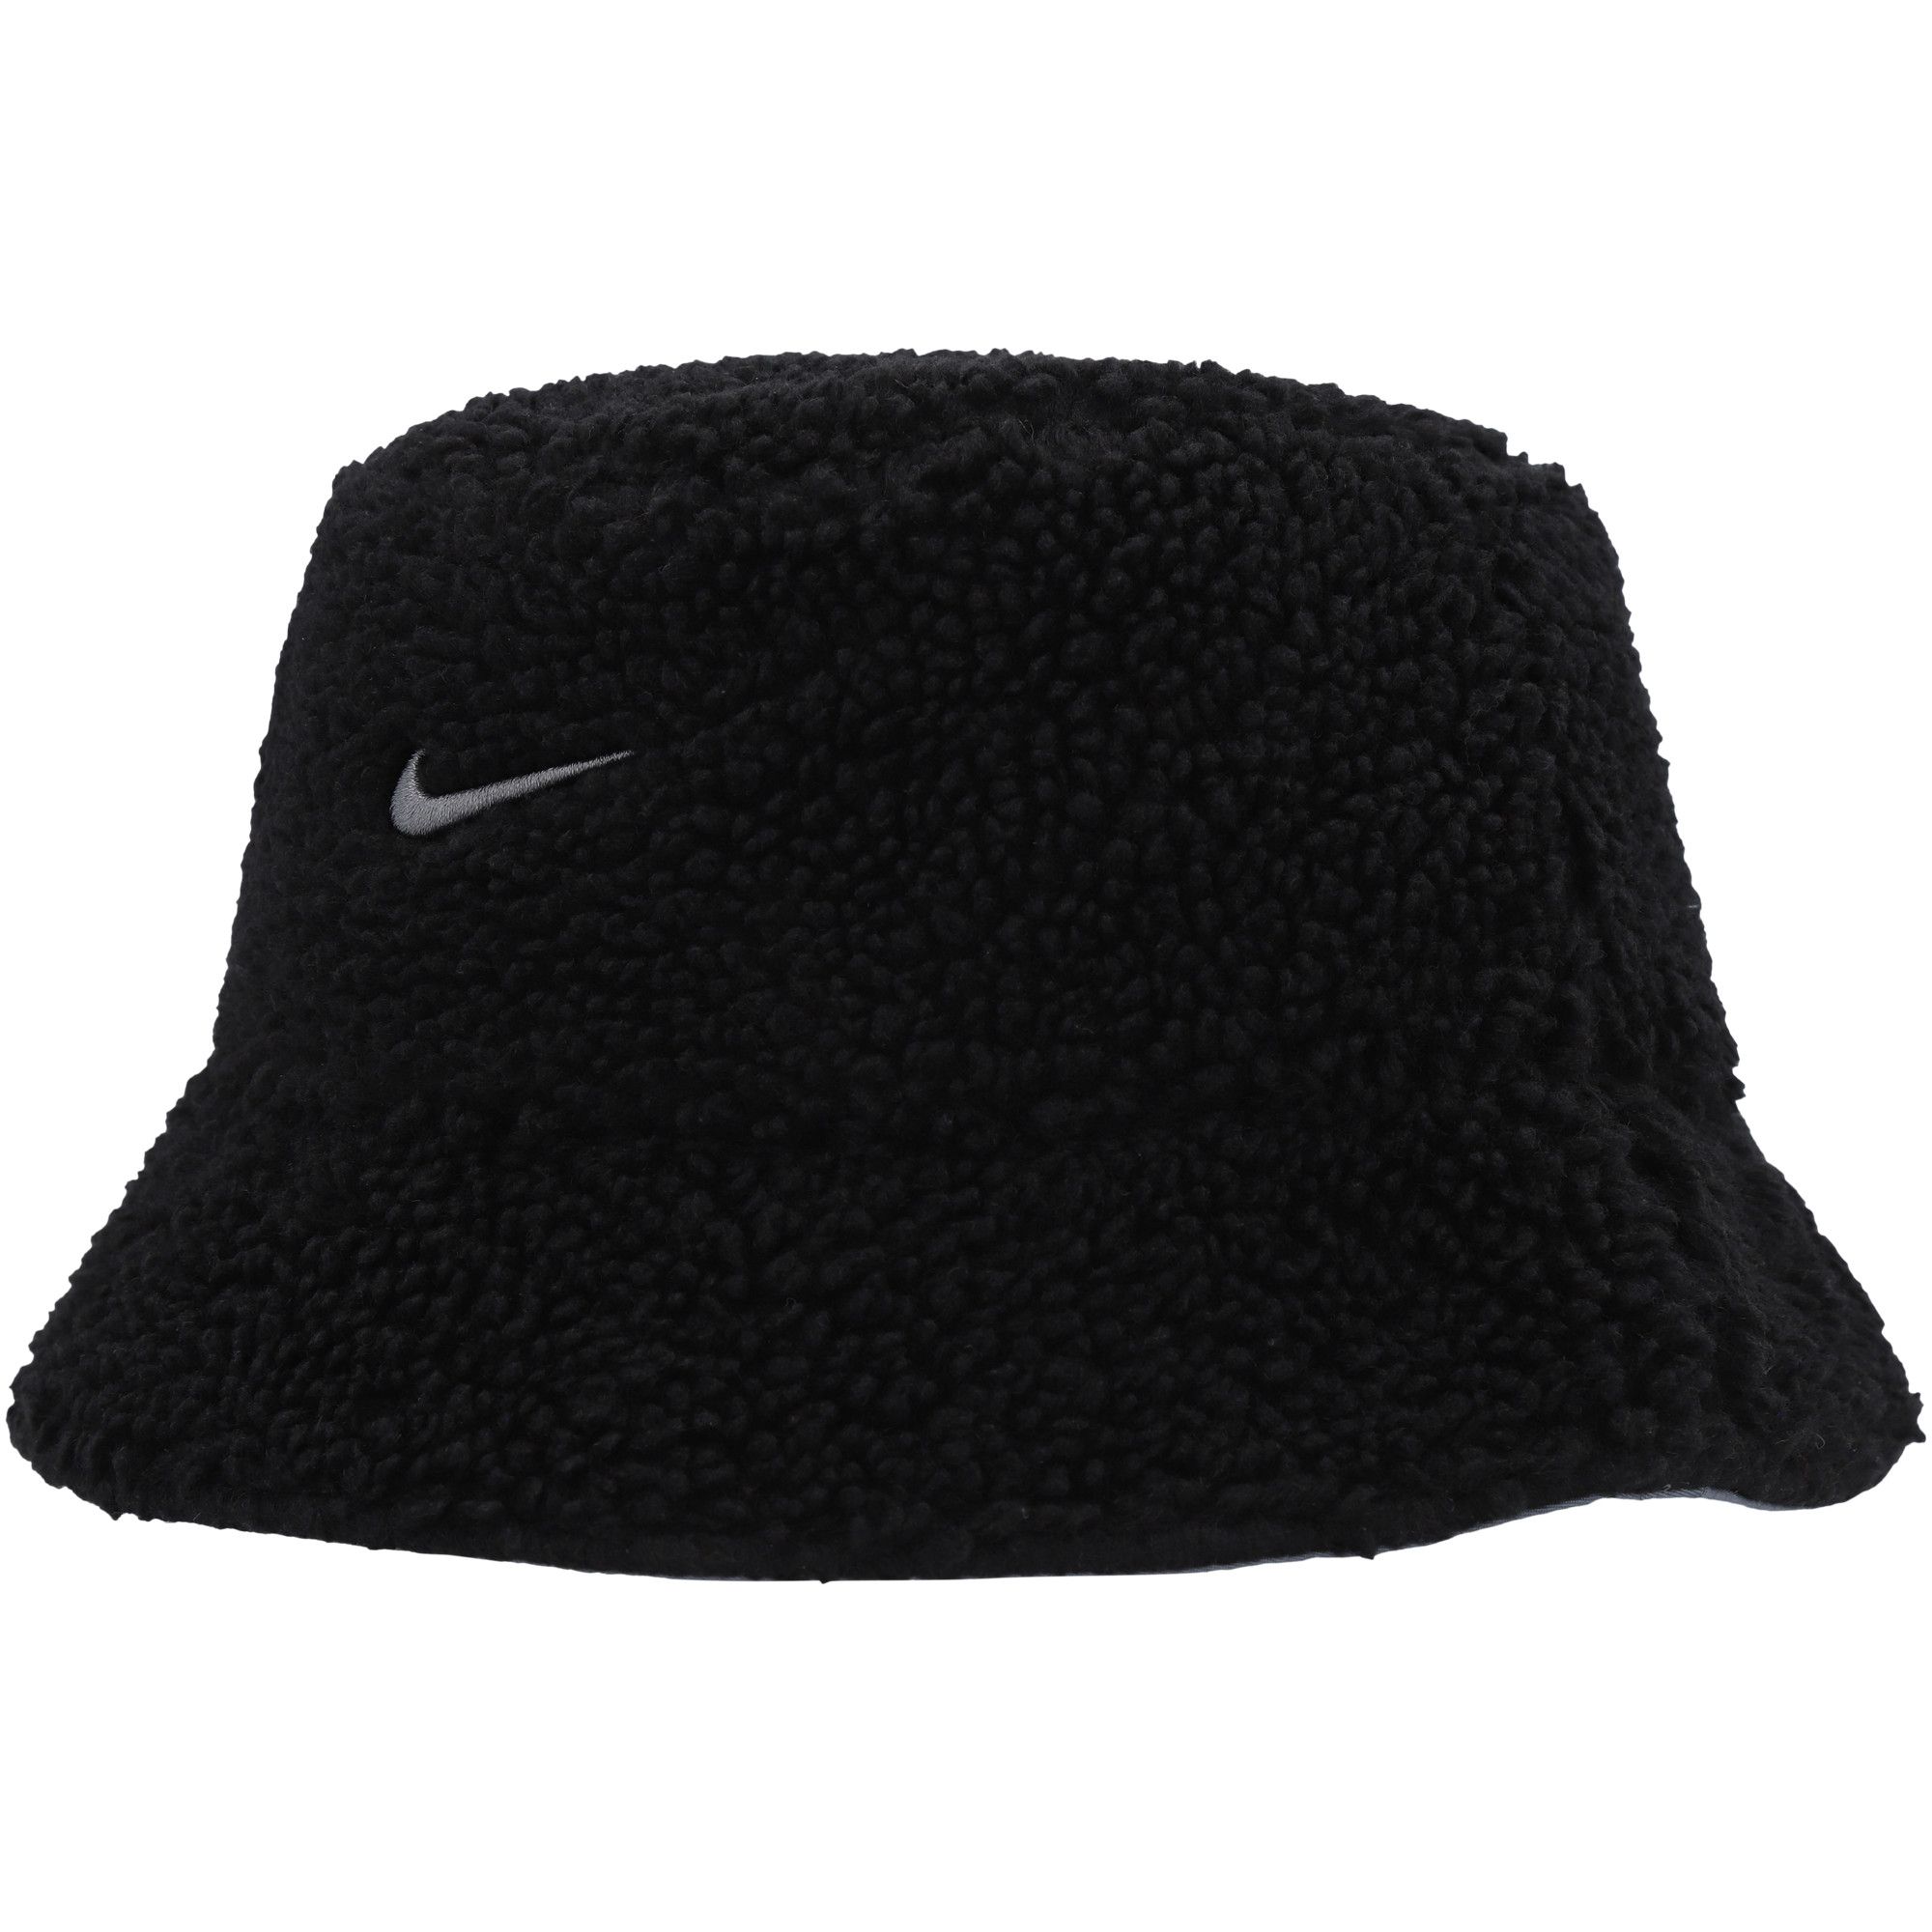 Men's Nike Black/Gray Sherpa Reversible Bucket Hat | Fanatics